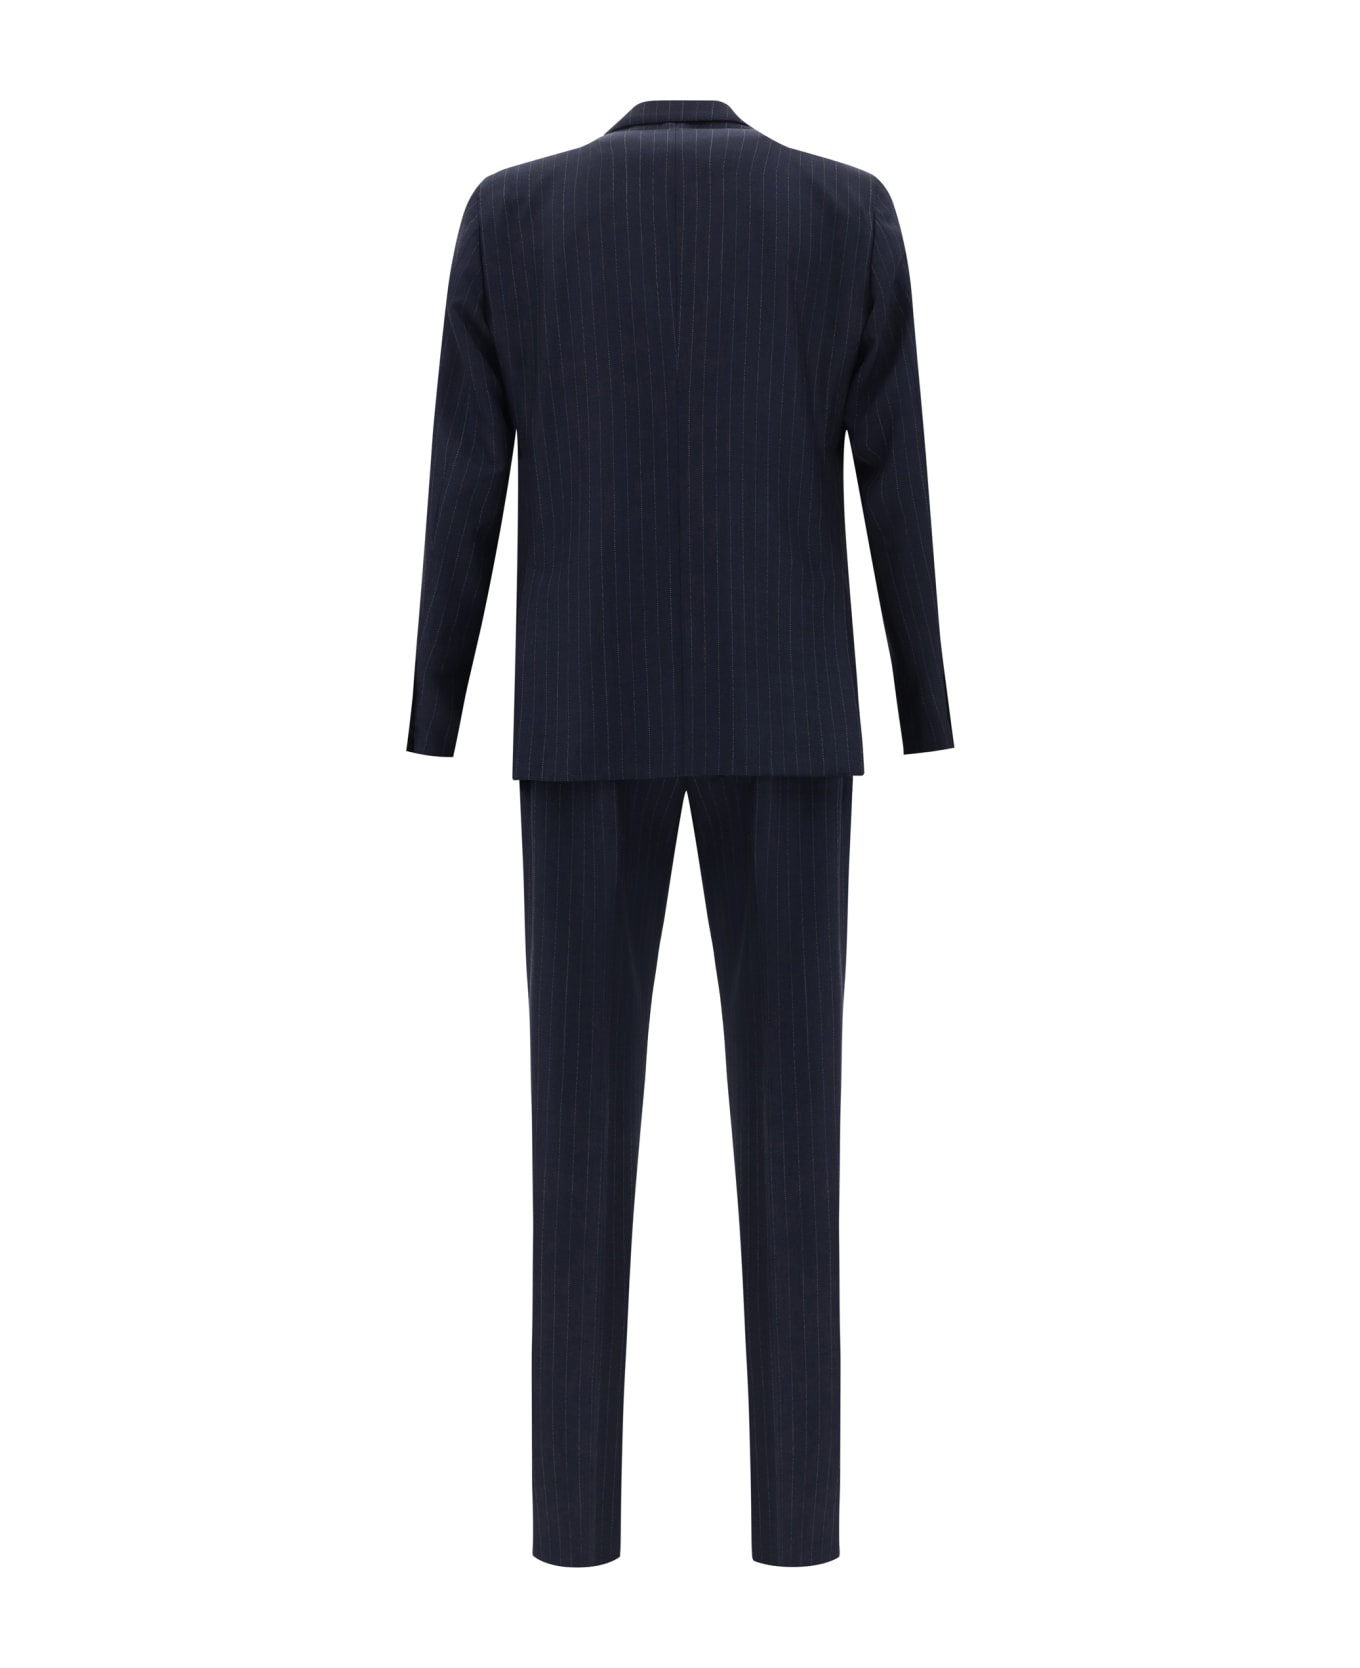 Lardini Suit - 850bi スーツ